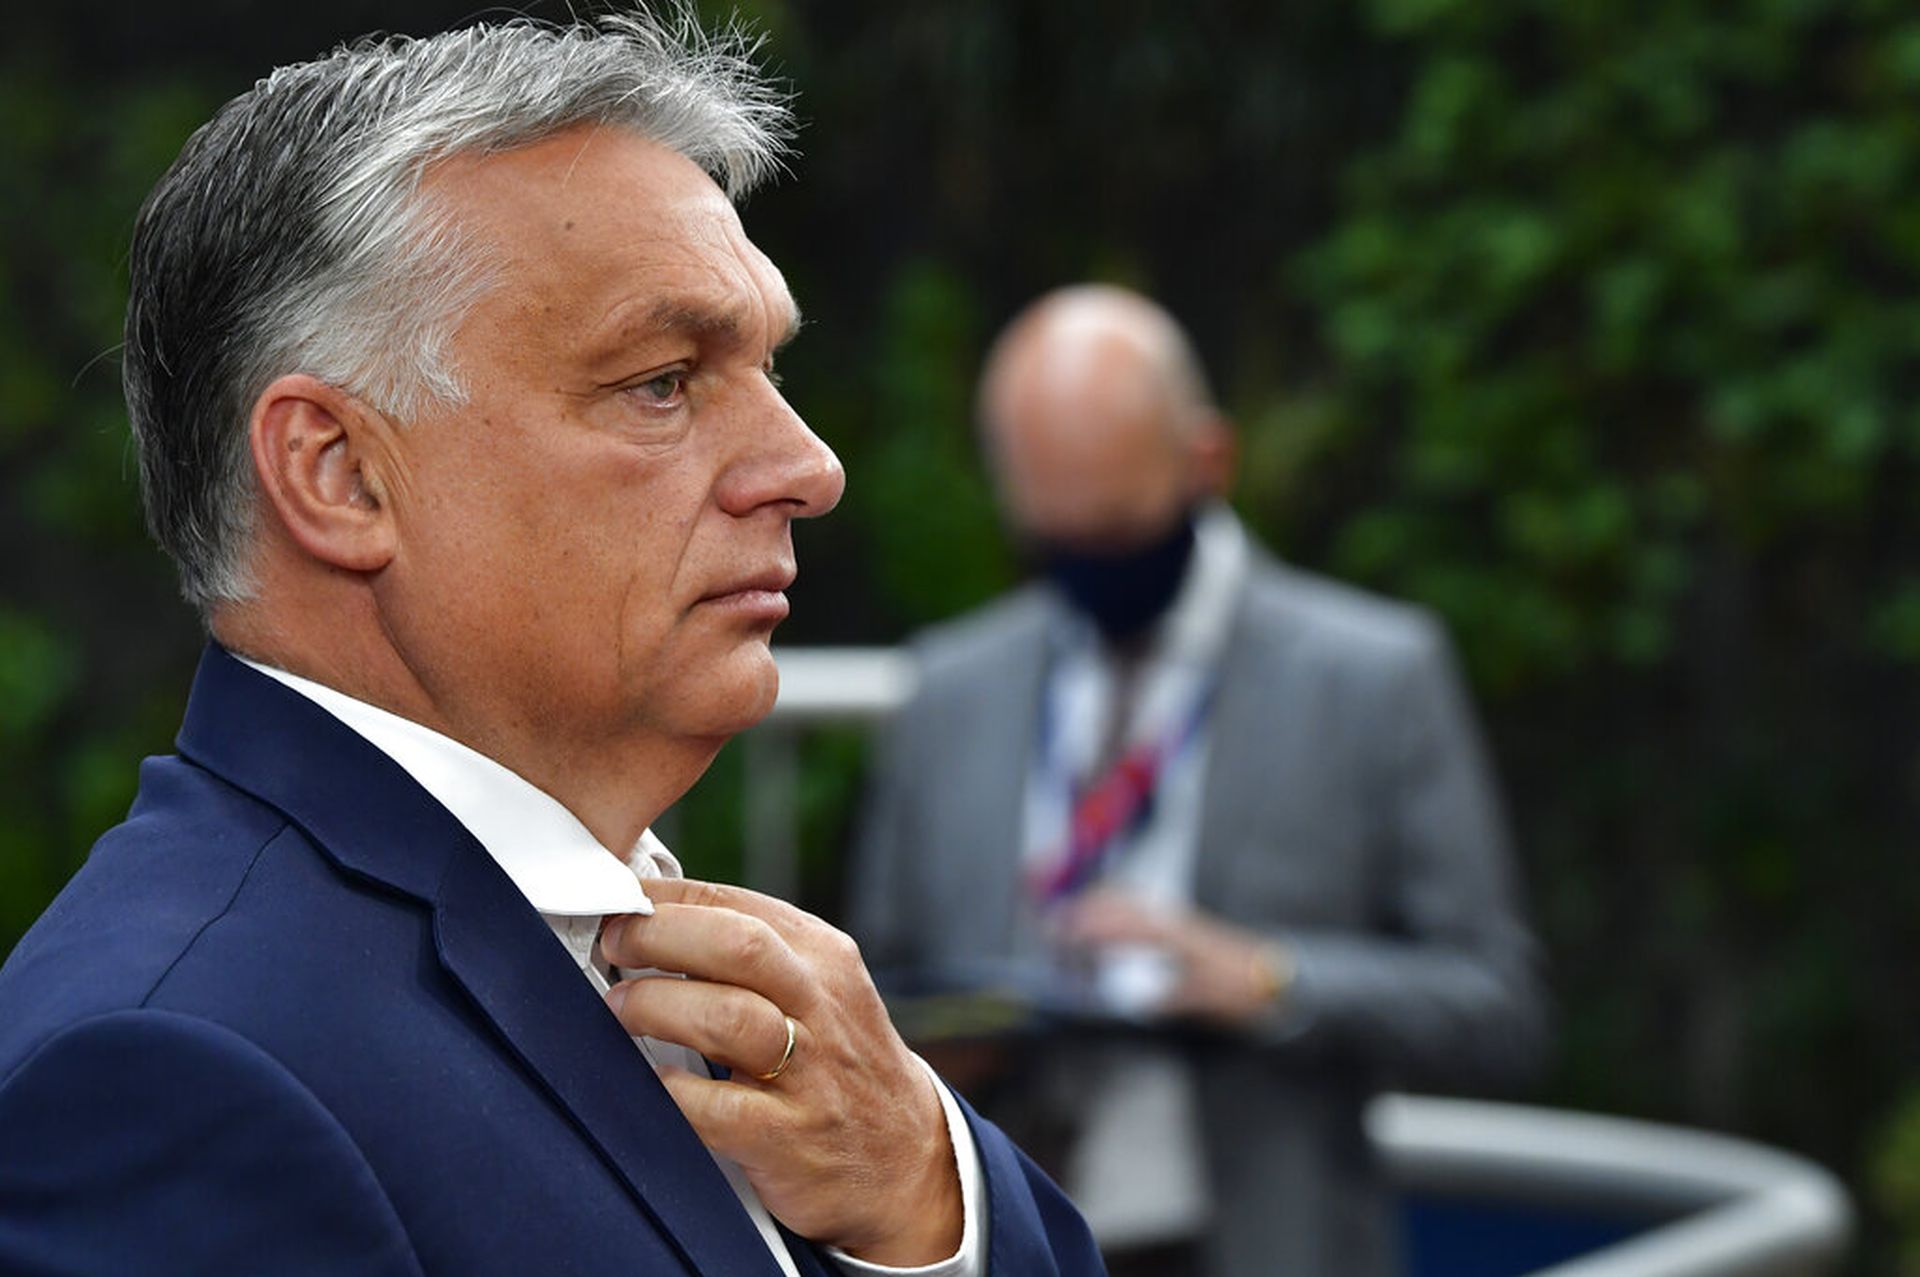 匈牙利总理欧尔班曾威胁要否决预算，不过预计仍为匈牙利争得更多资助的他“见好便收”，会后更宣称他是个老人家，“这并非我的第一次峰会”，指这是他的成功“秘密”。（美联社）